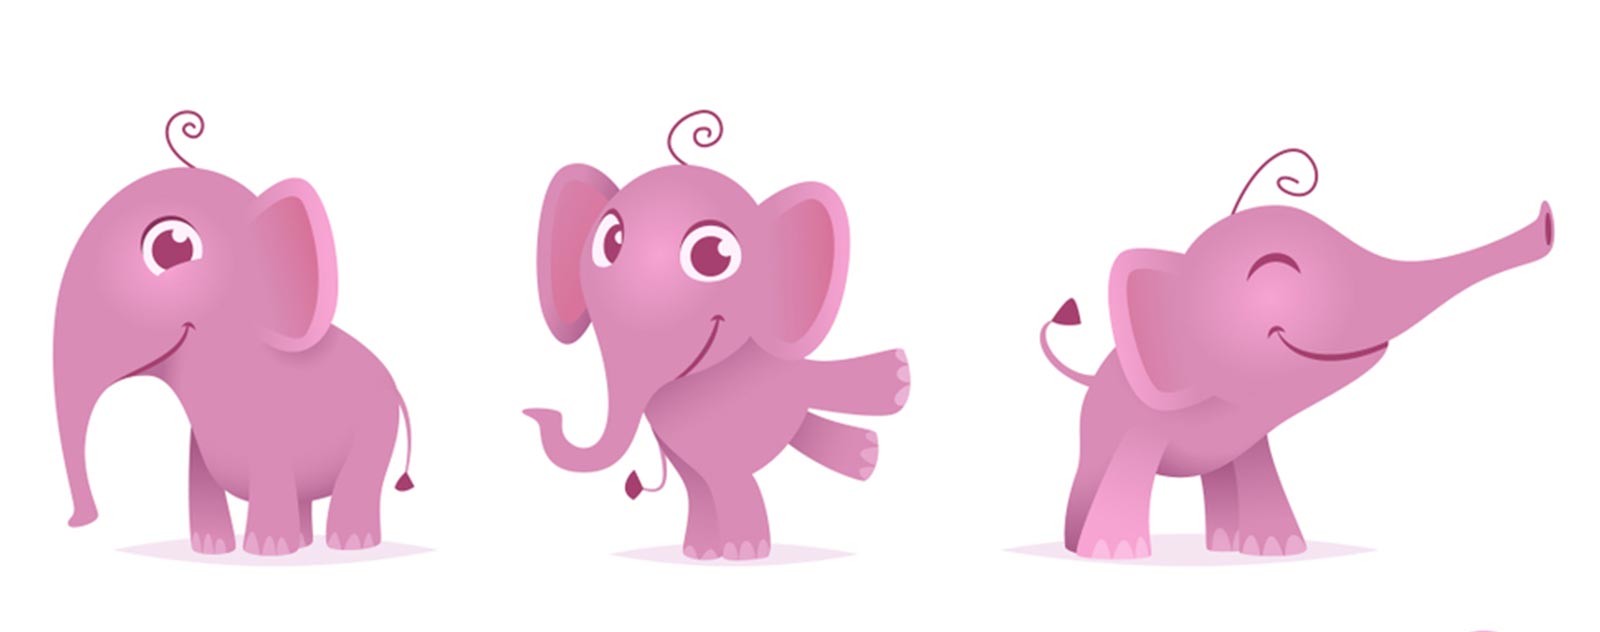 pink-elephant-image